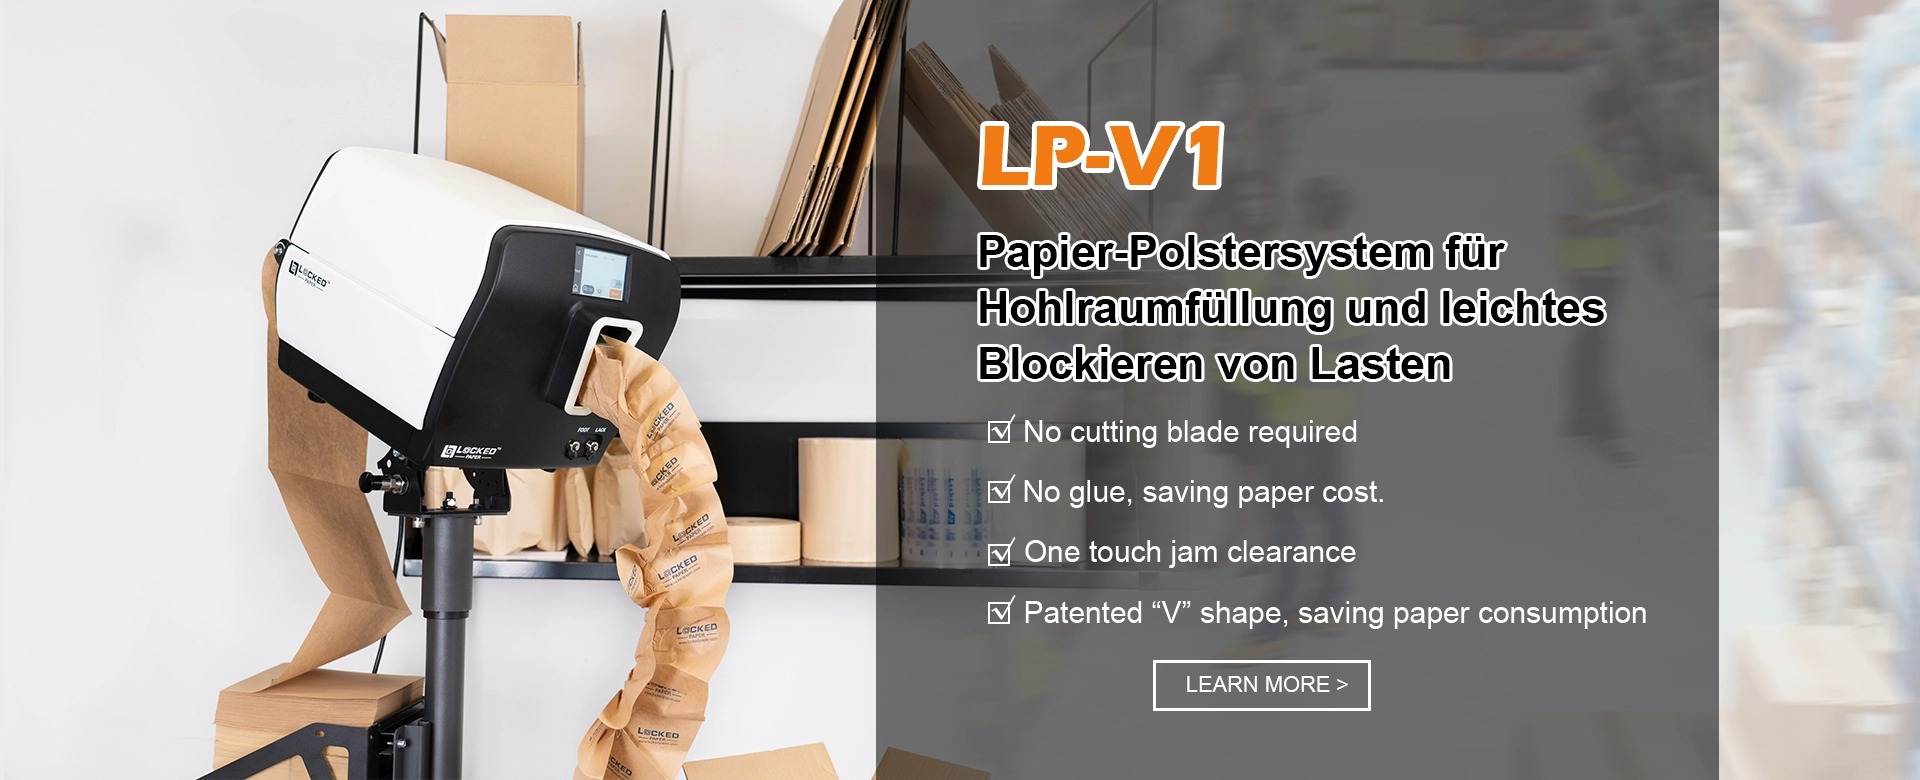 LP-V1 Papier-Polstersystem